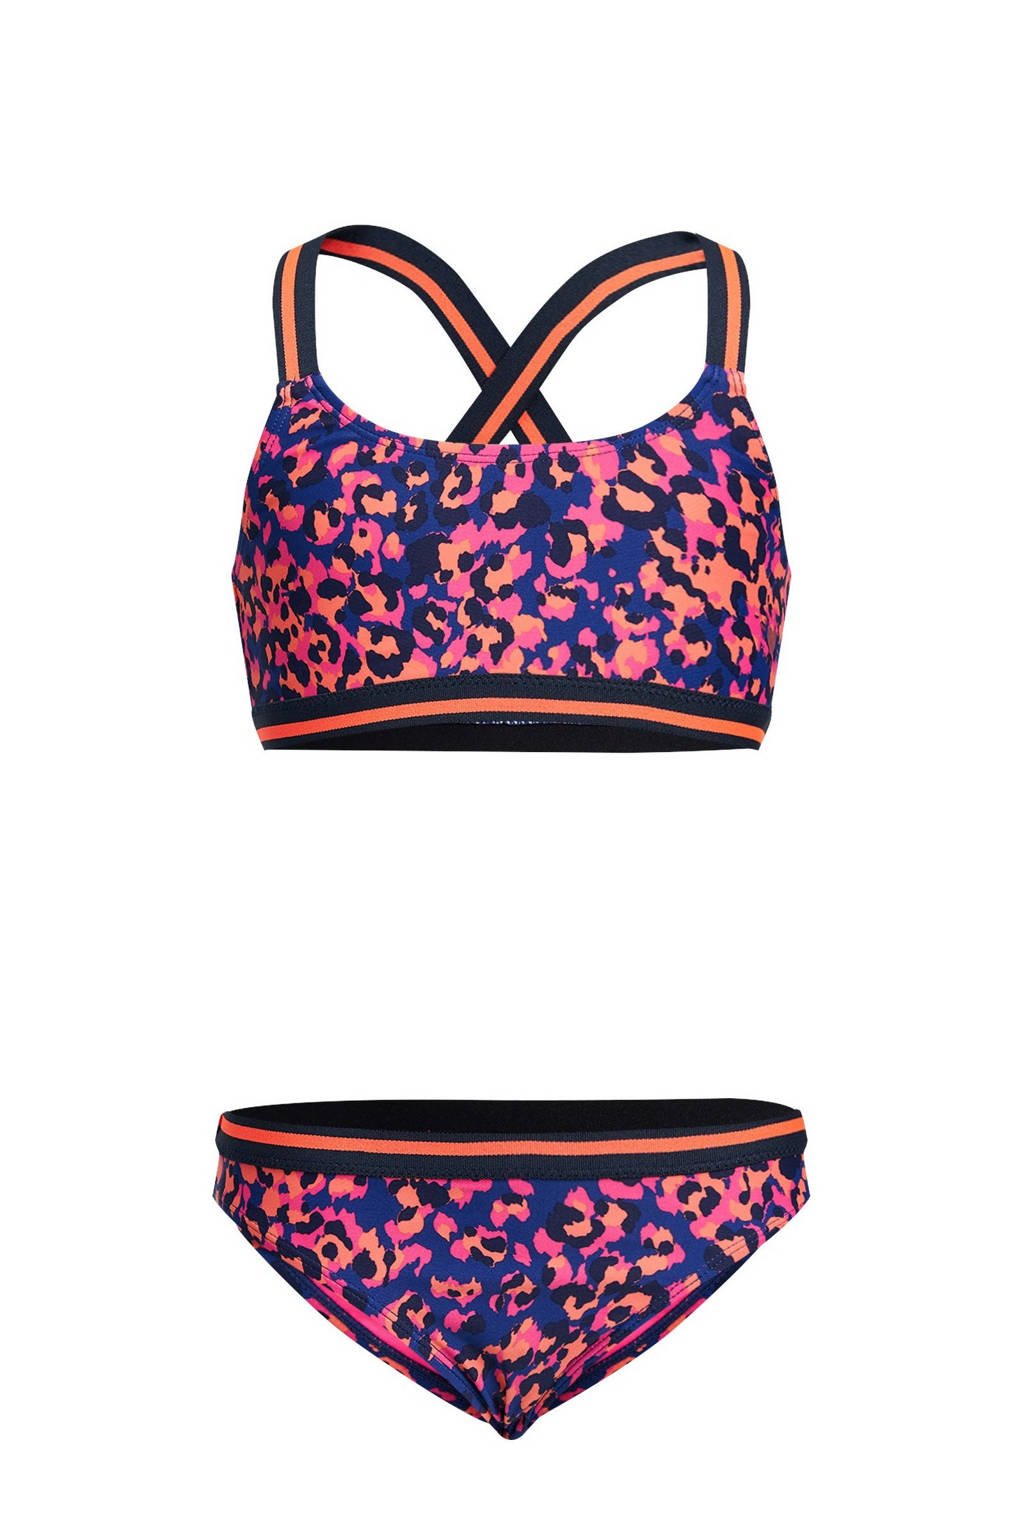 bouwer Geslaagd compileren WE Fashion bikini met panterprint blauw/roze | wehkamp